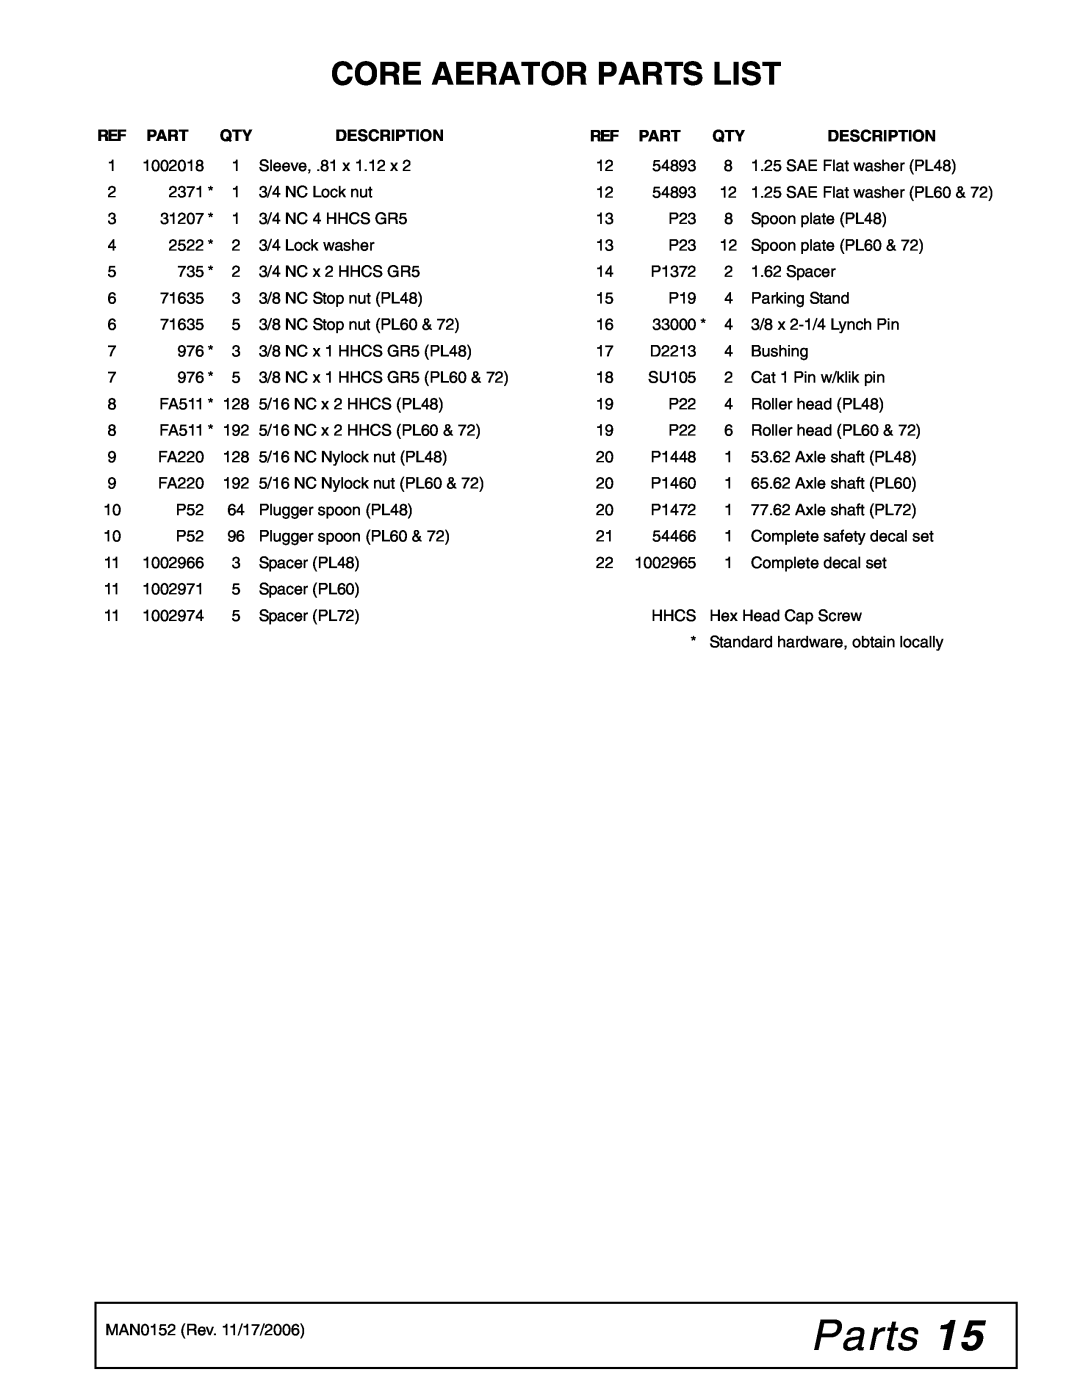 Woods Equipment PL72, PL60, PL48 manual Core Aerator Parts List 